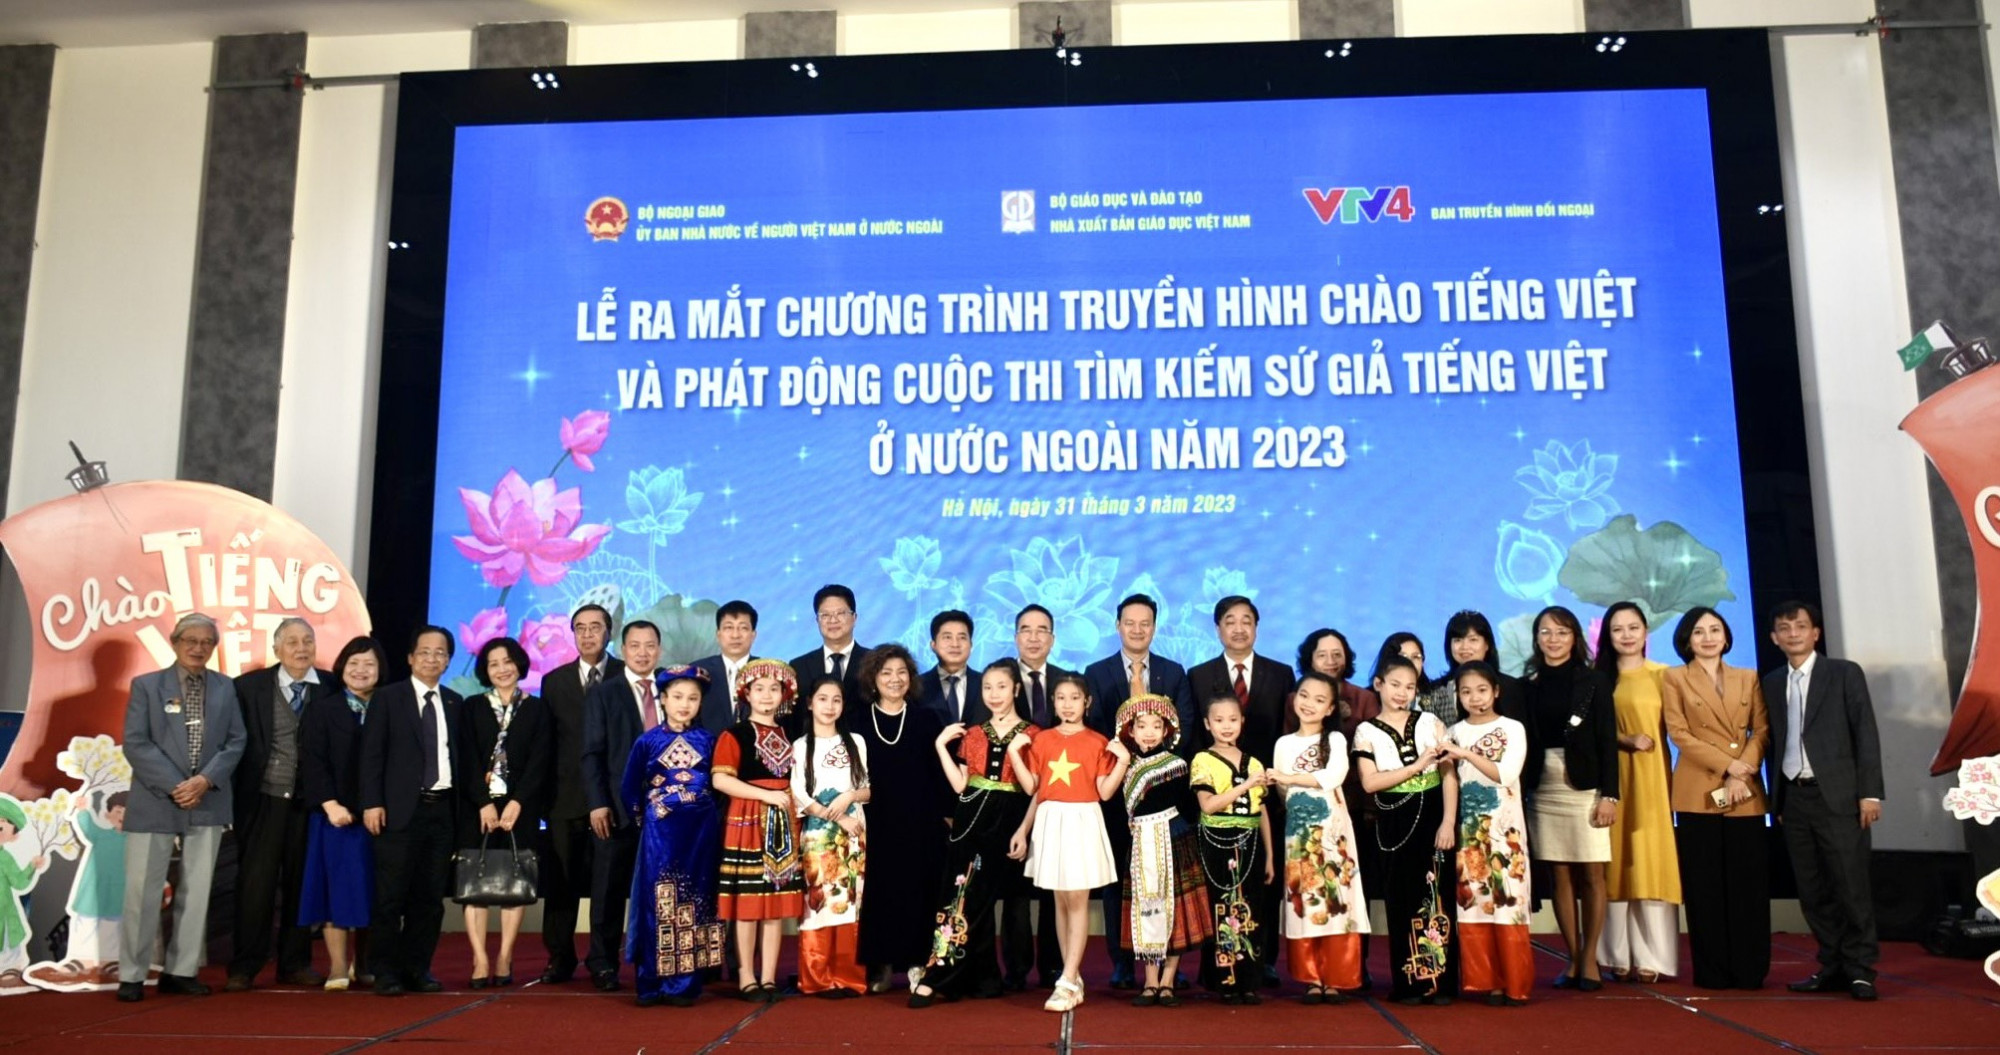 Lễ phát động cuộc thi tìm kiếm Sứ giả tiếng Việt ở nước ngoài năm 2023. Ảnh: Bộ Ngọa giao